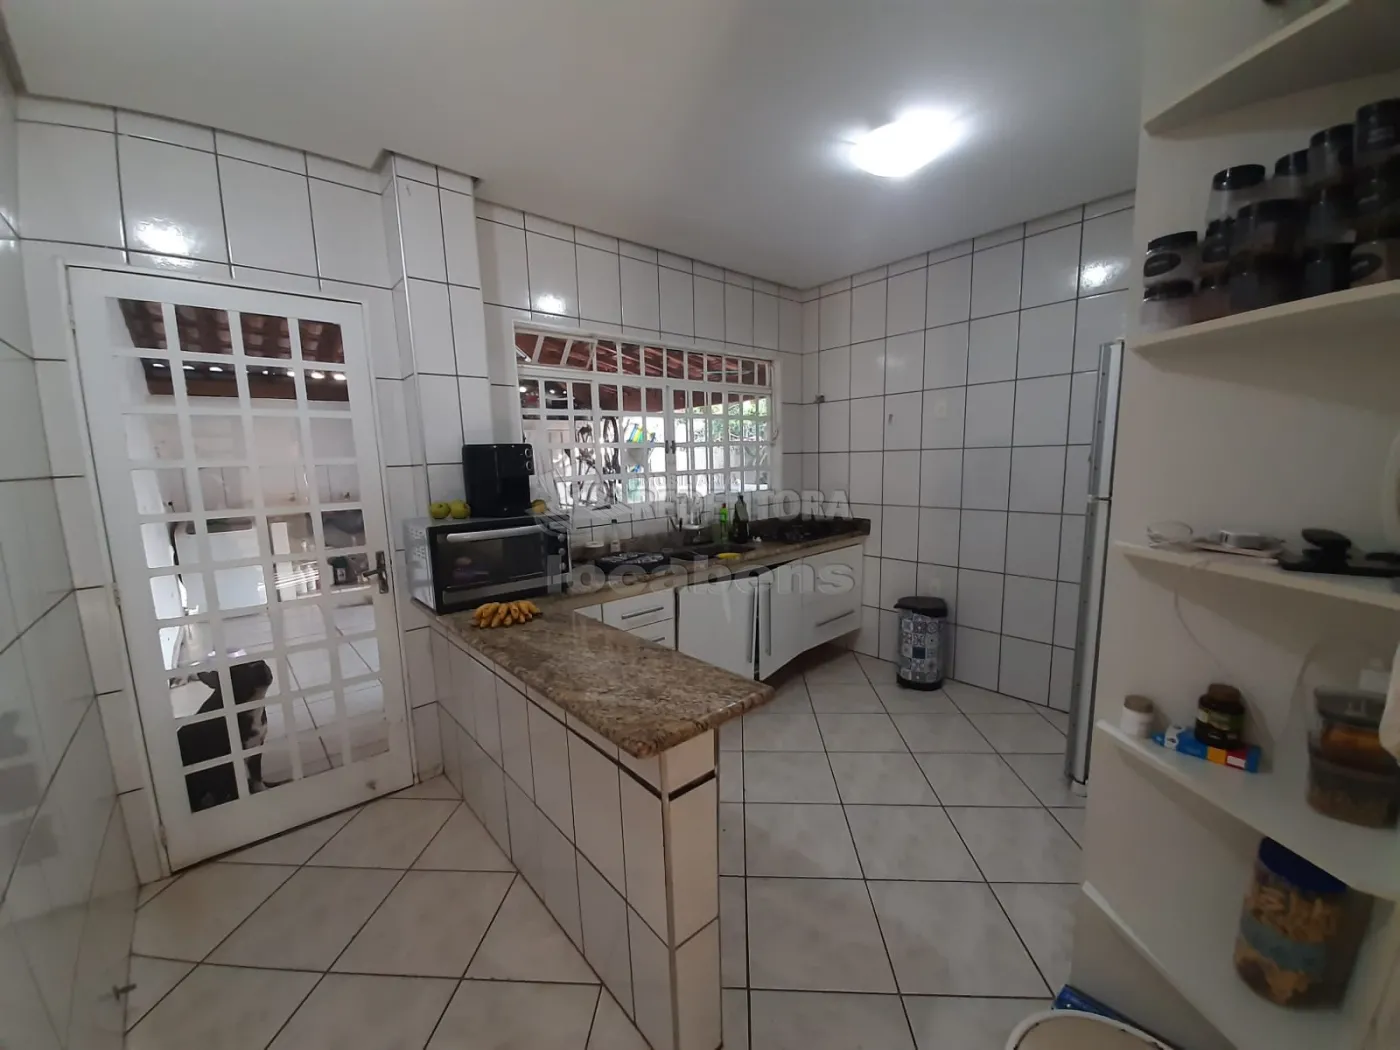 Comprar Casa / Padrão em São José do Rio Preto apenas R$ 330.000,00 - Foto 8